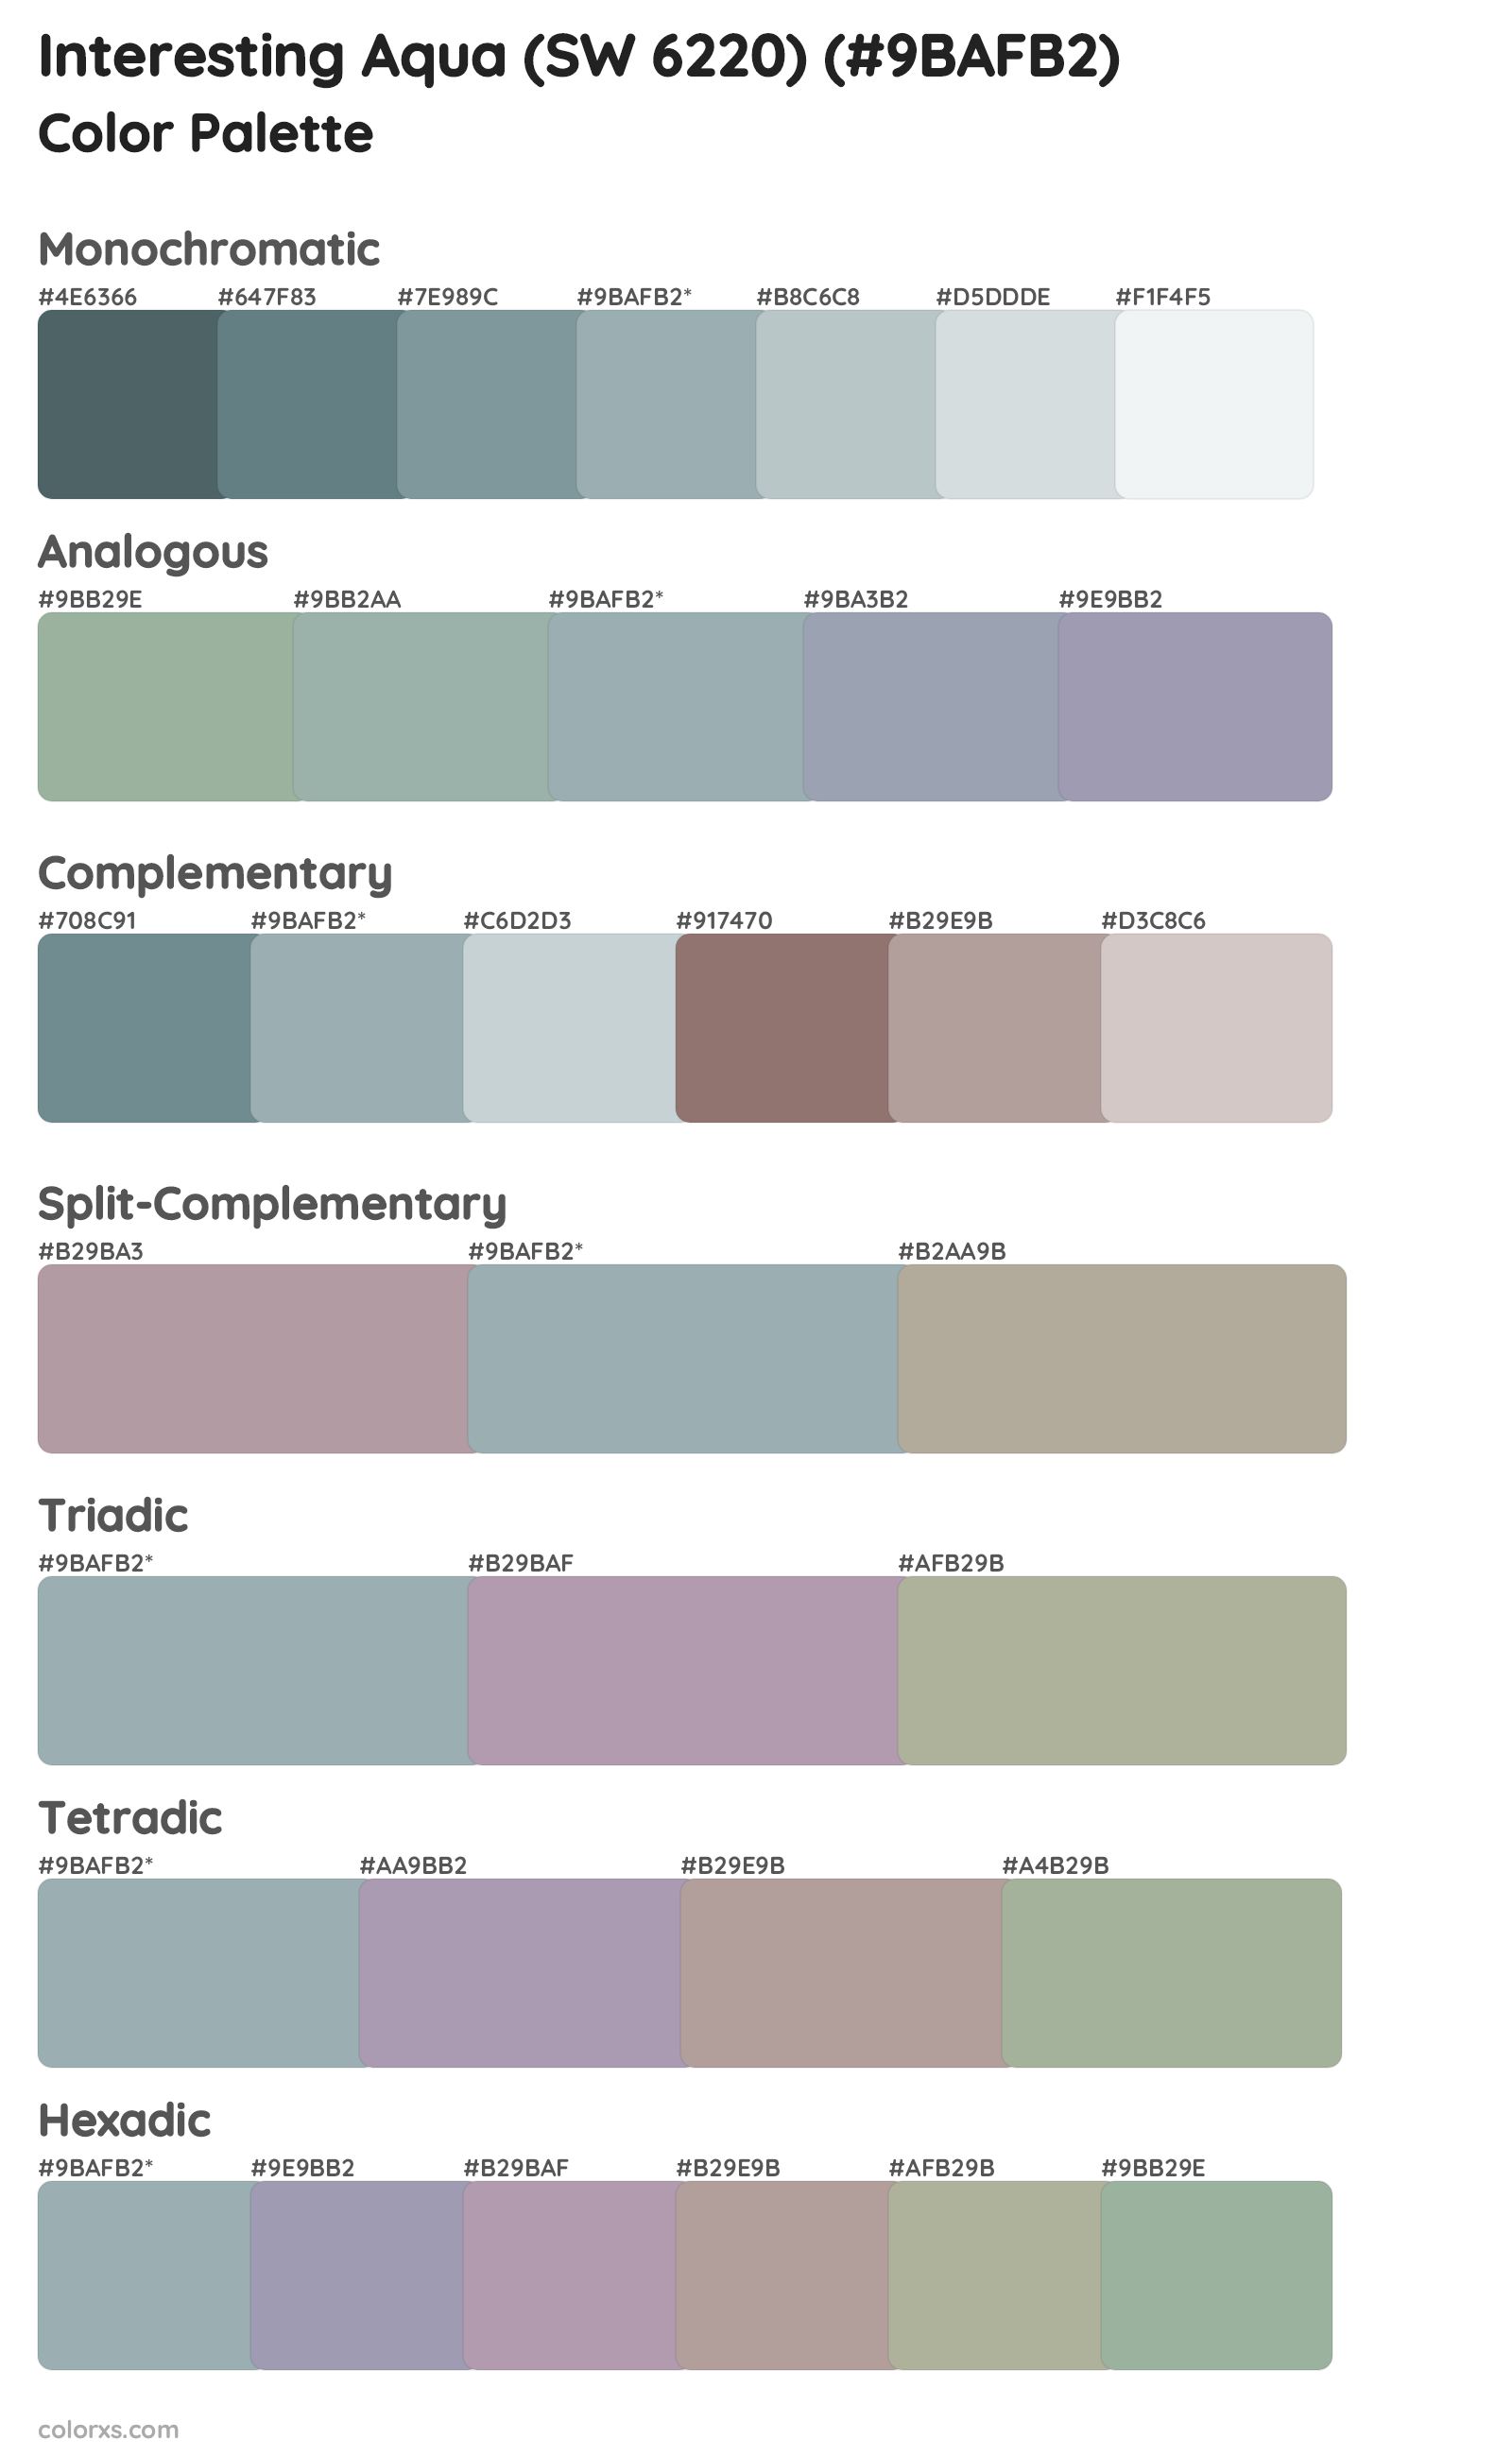 Interesting Aqua (SW 6220) Color Scheme Palettes